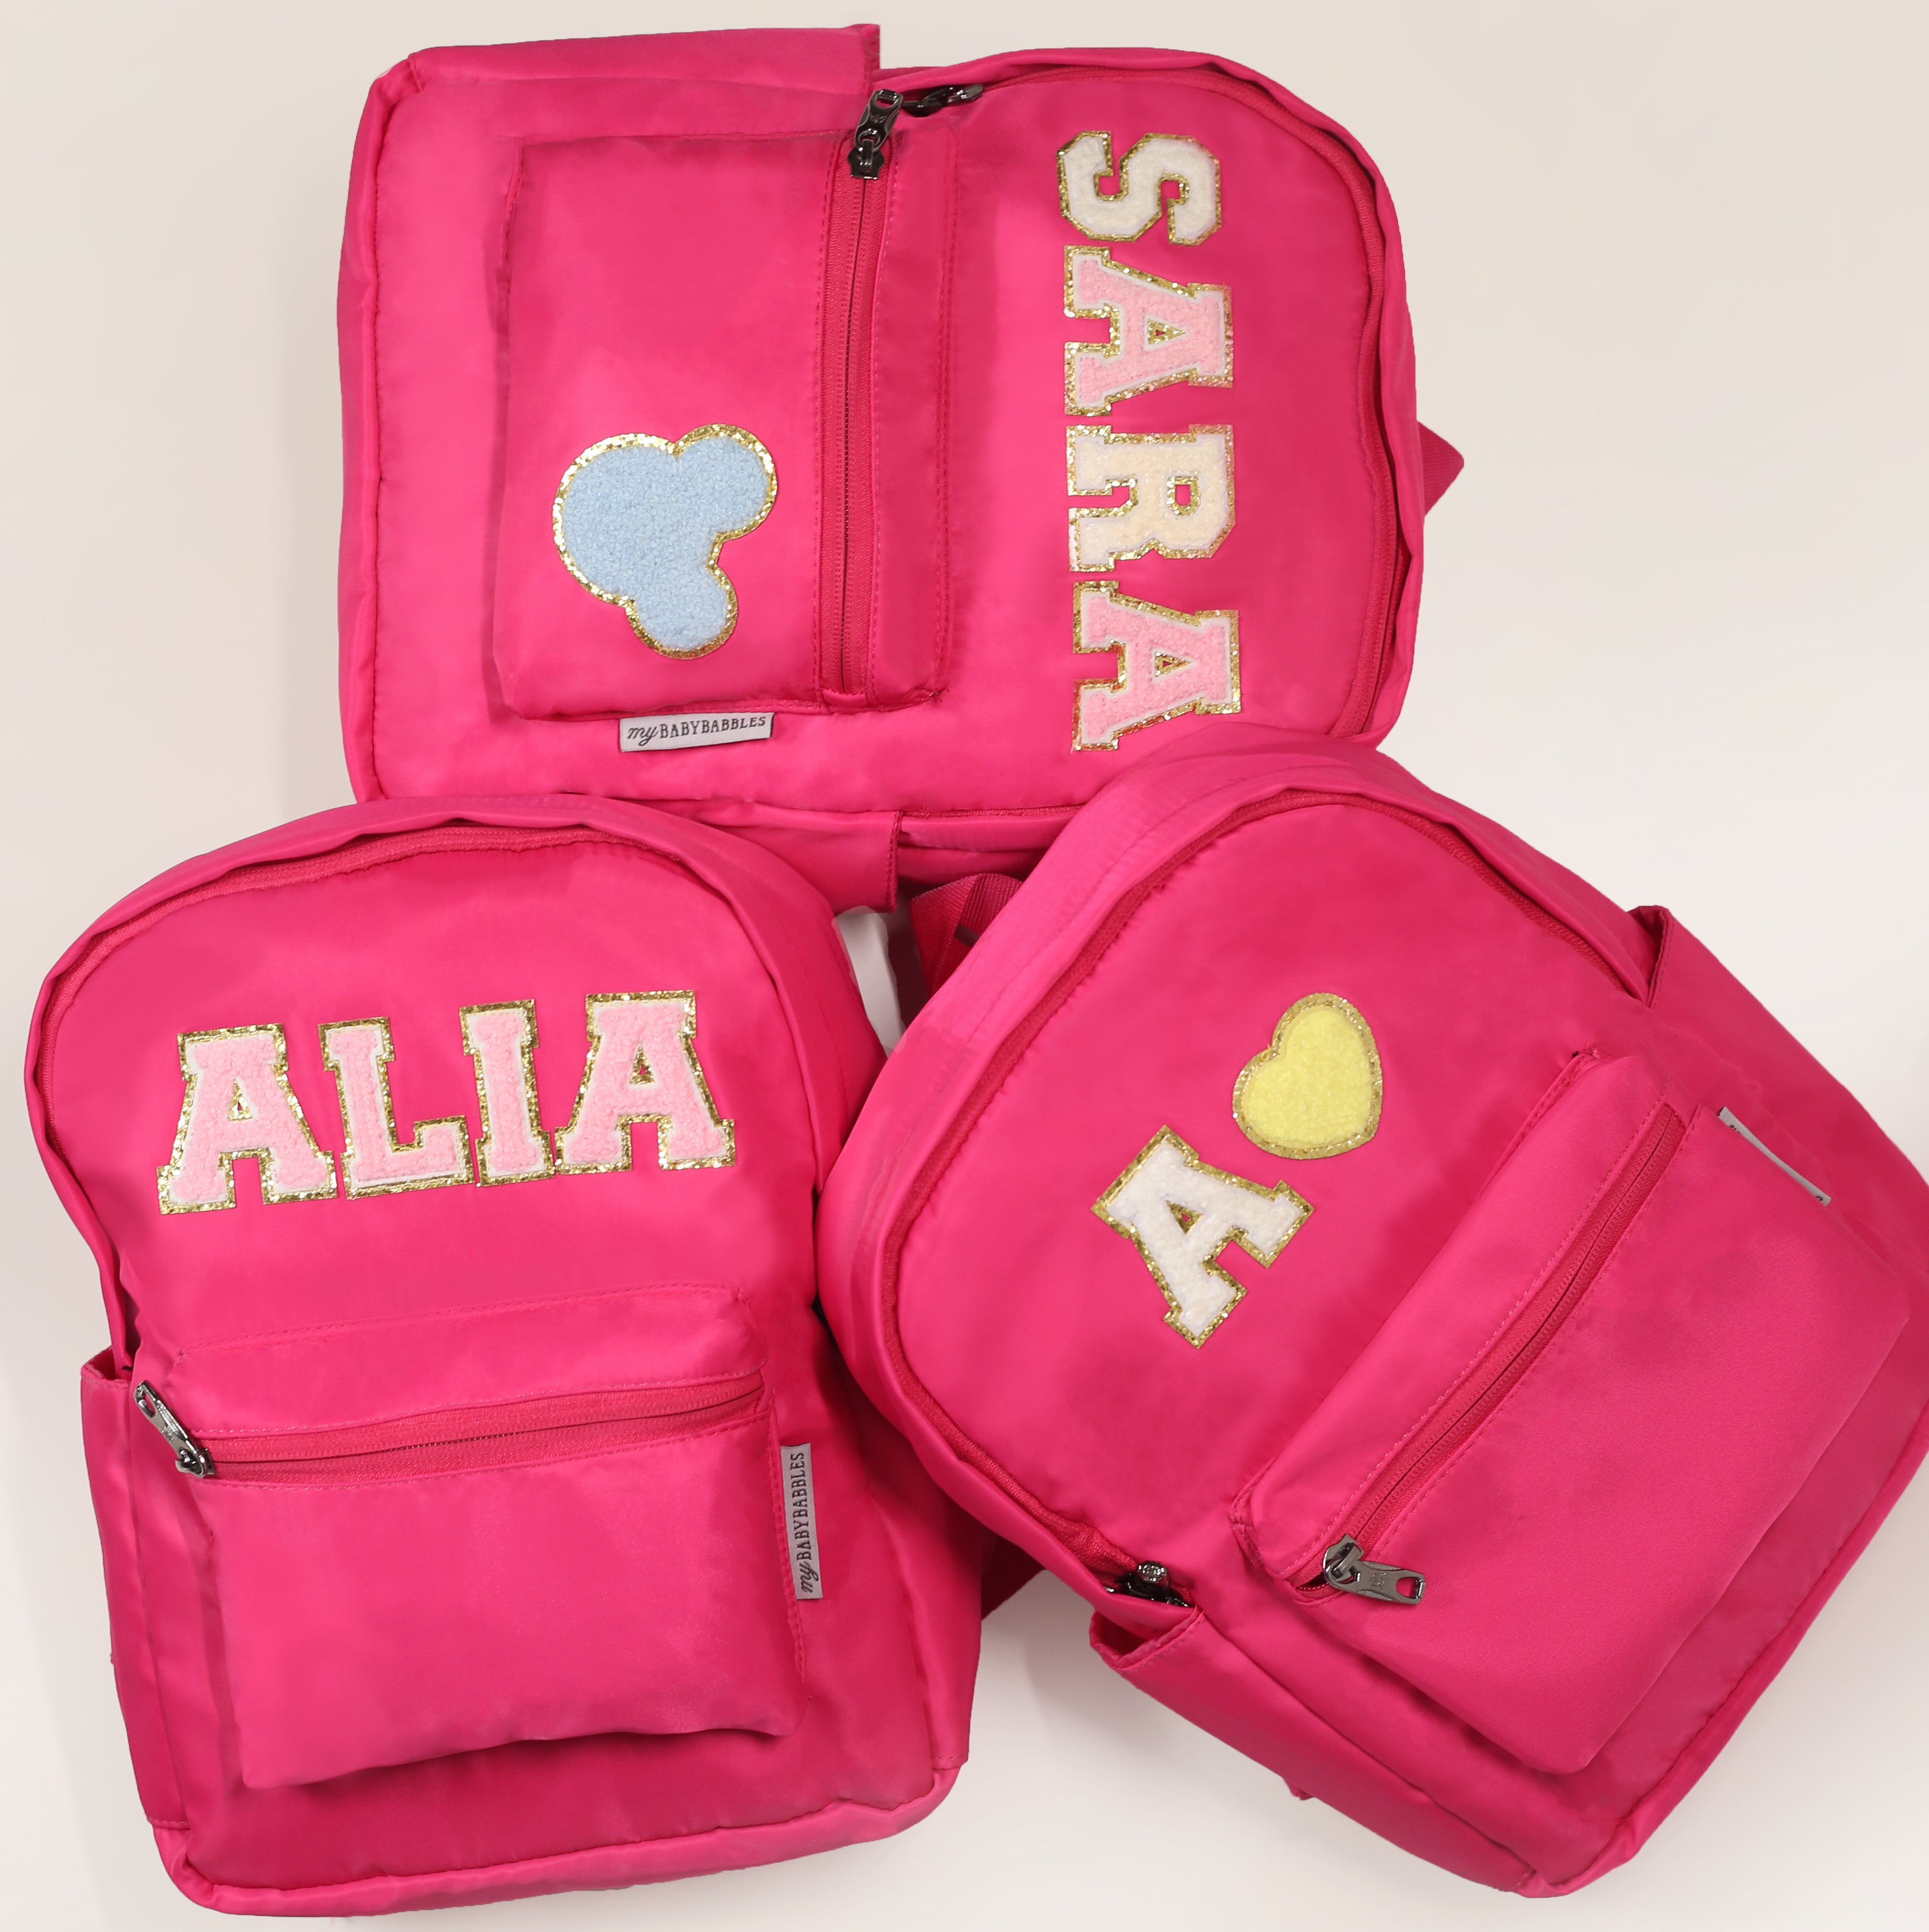 Personalised Kids Backpack, School Bag - Hot Pink